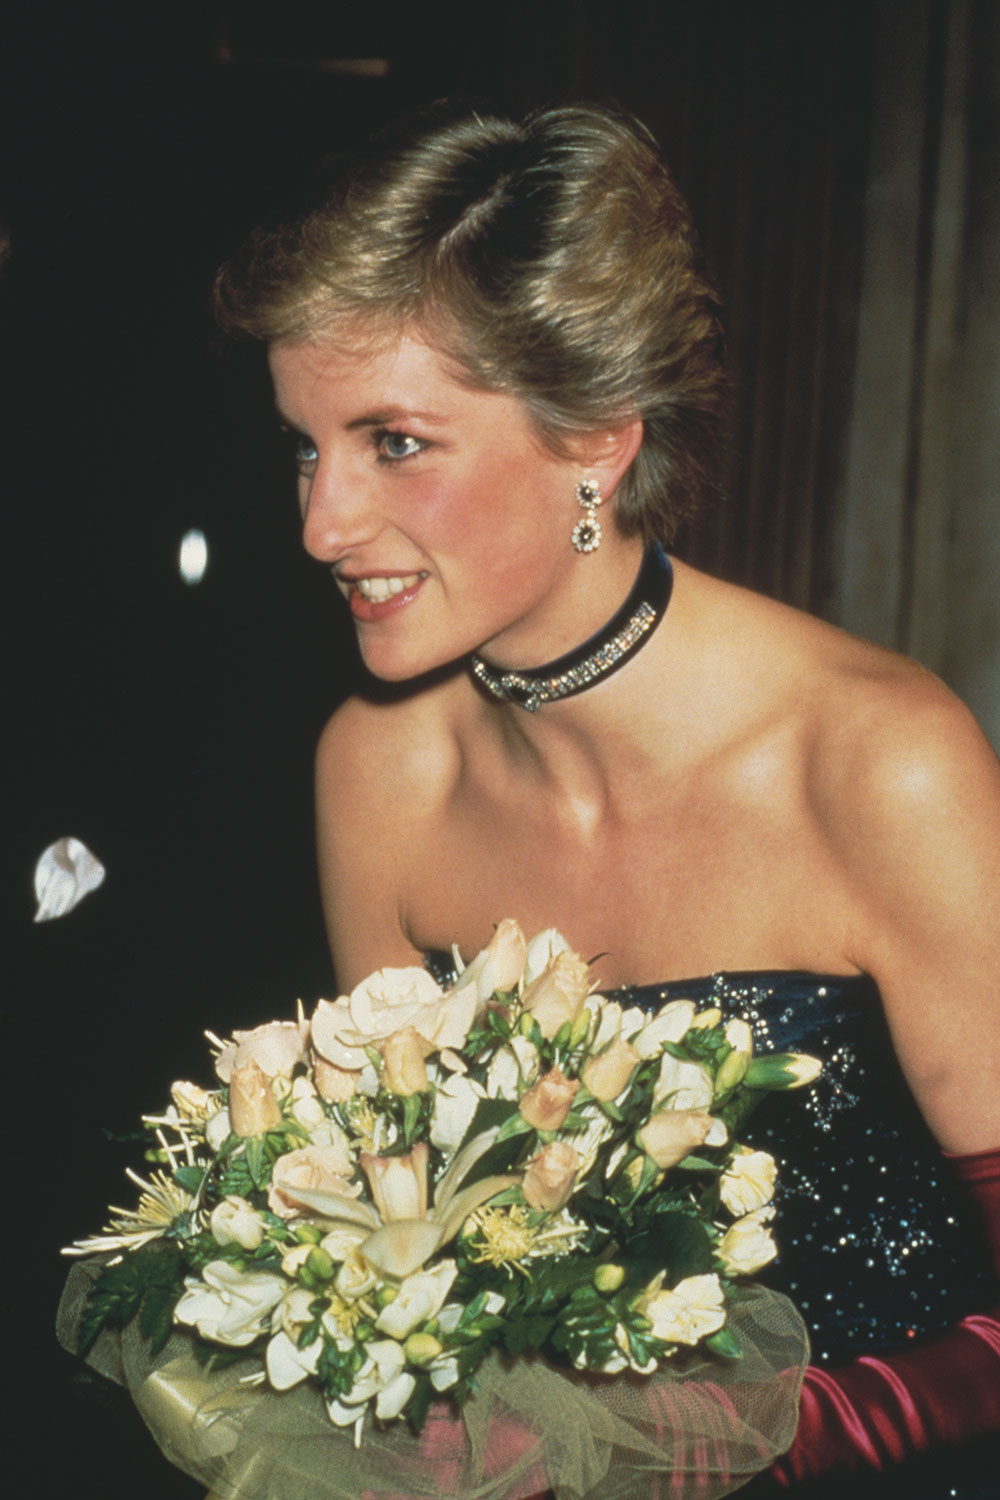 Princess Diana Recycled Royal Wardrobe